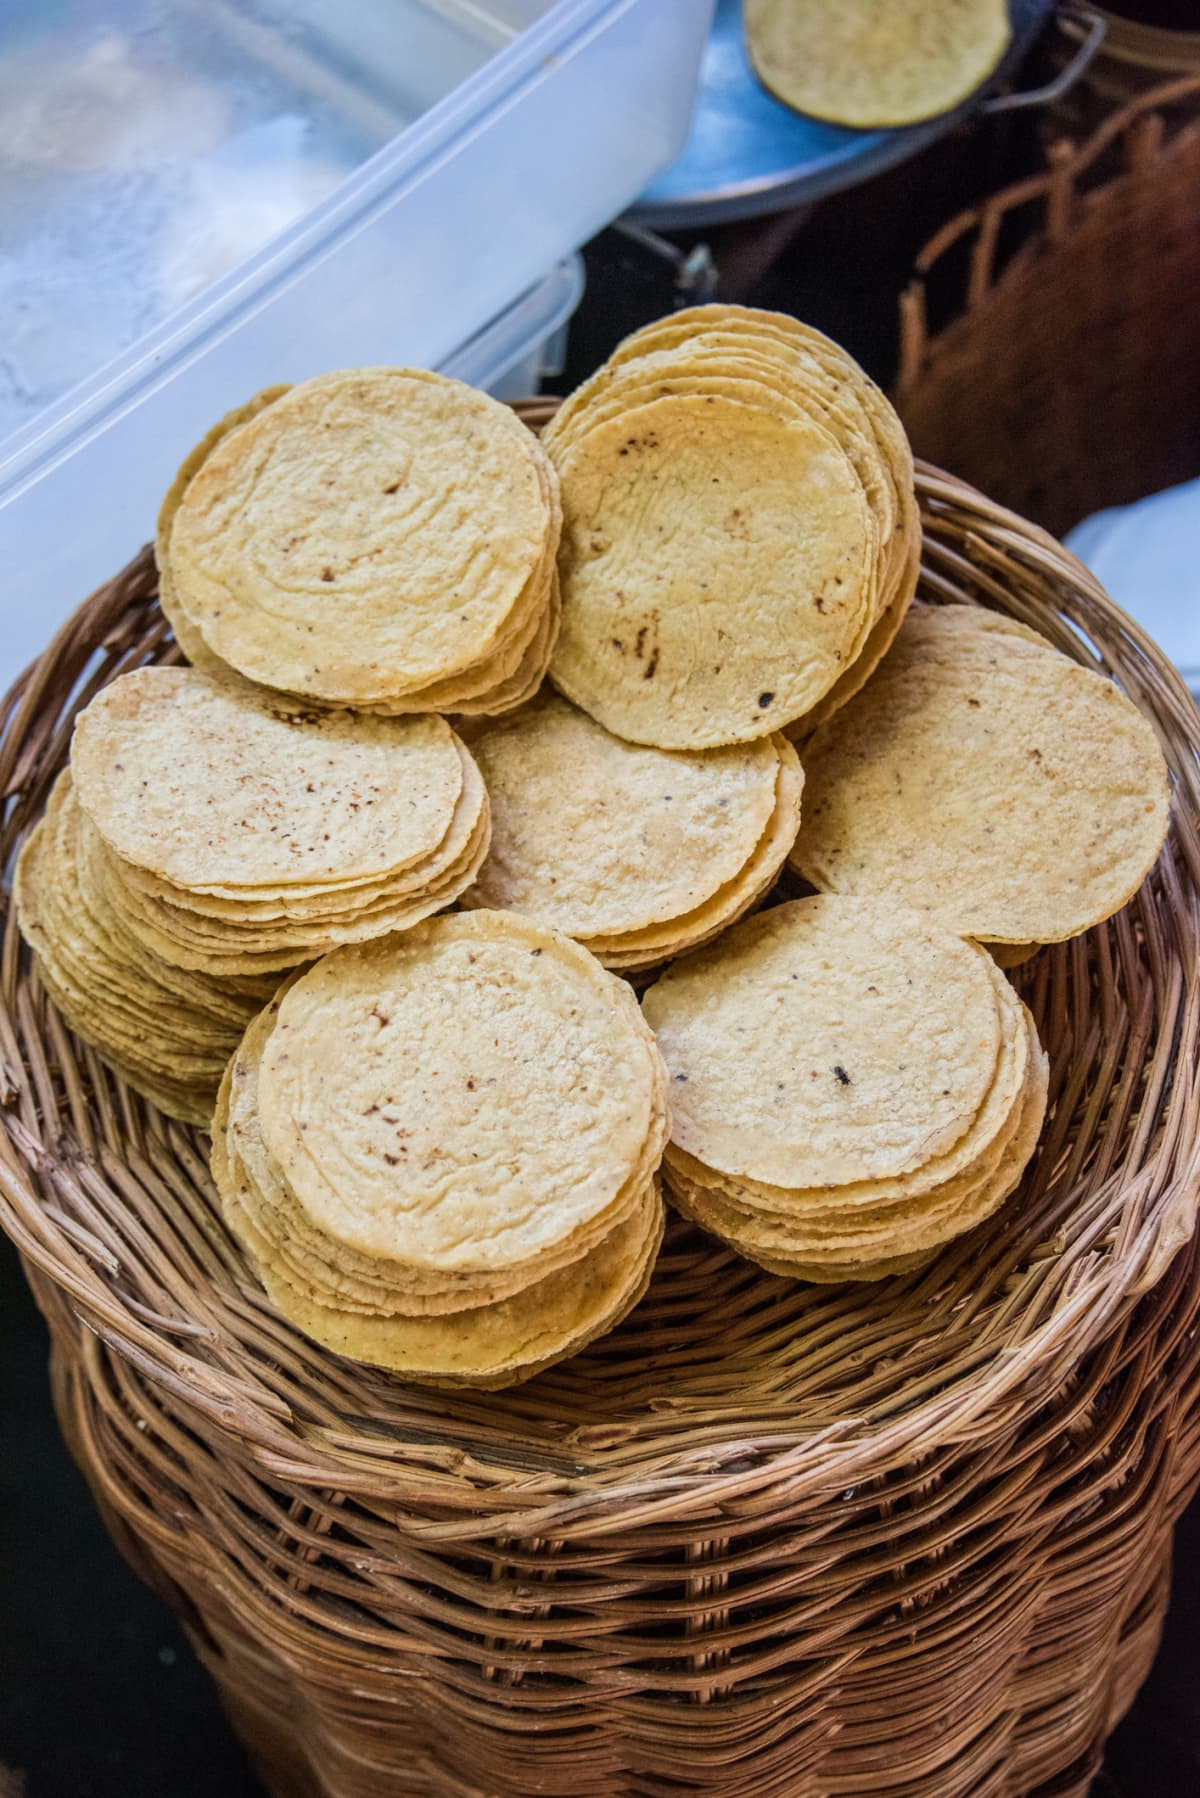 Corn tortillas in piles in a wicker basket